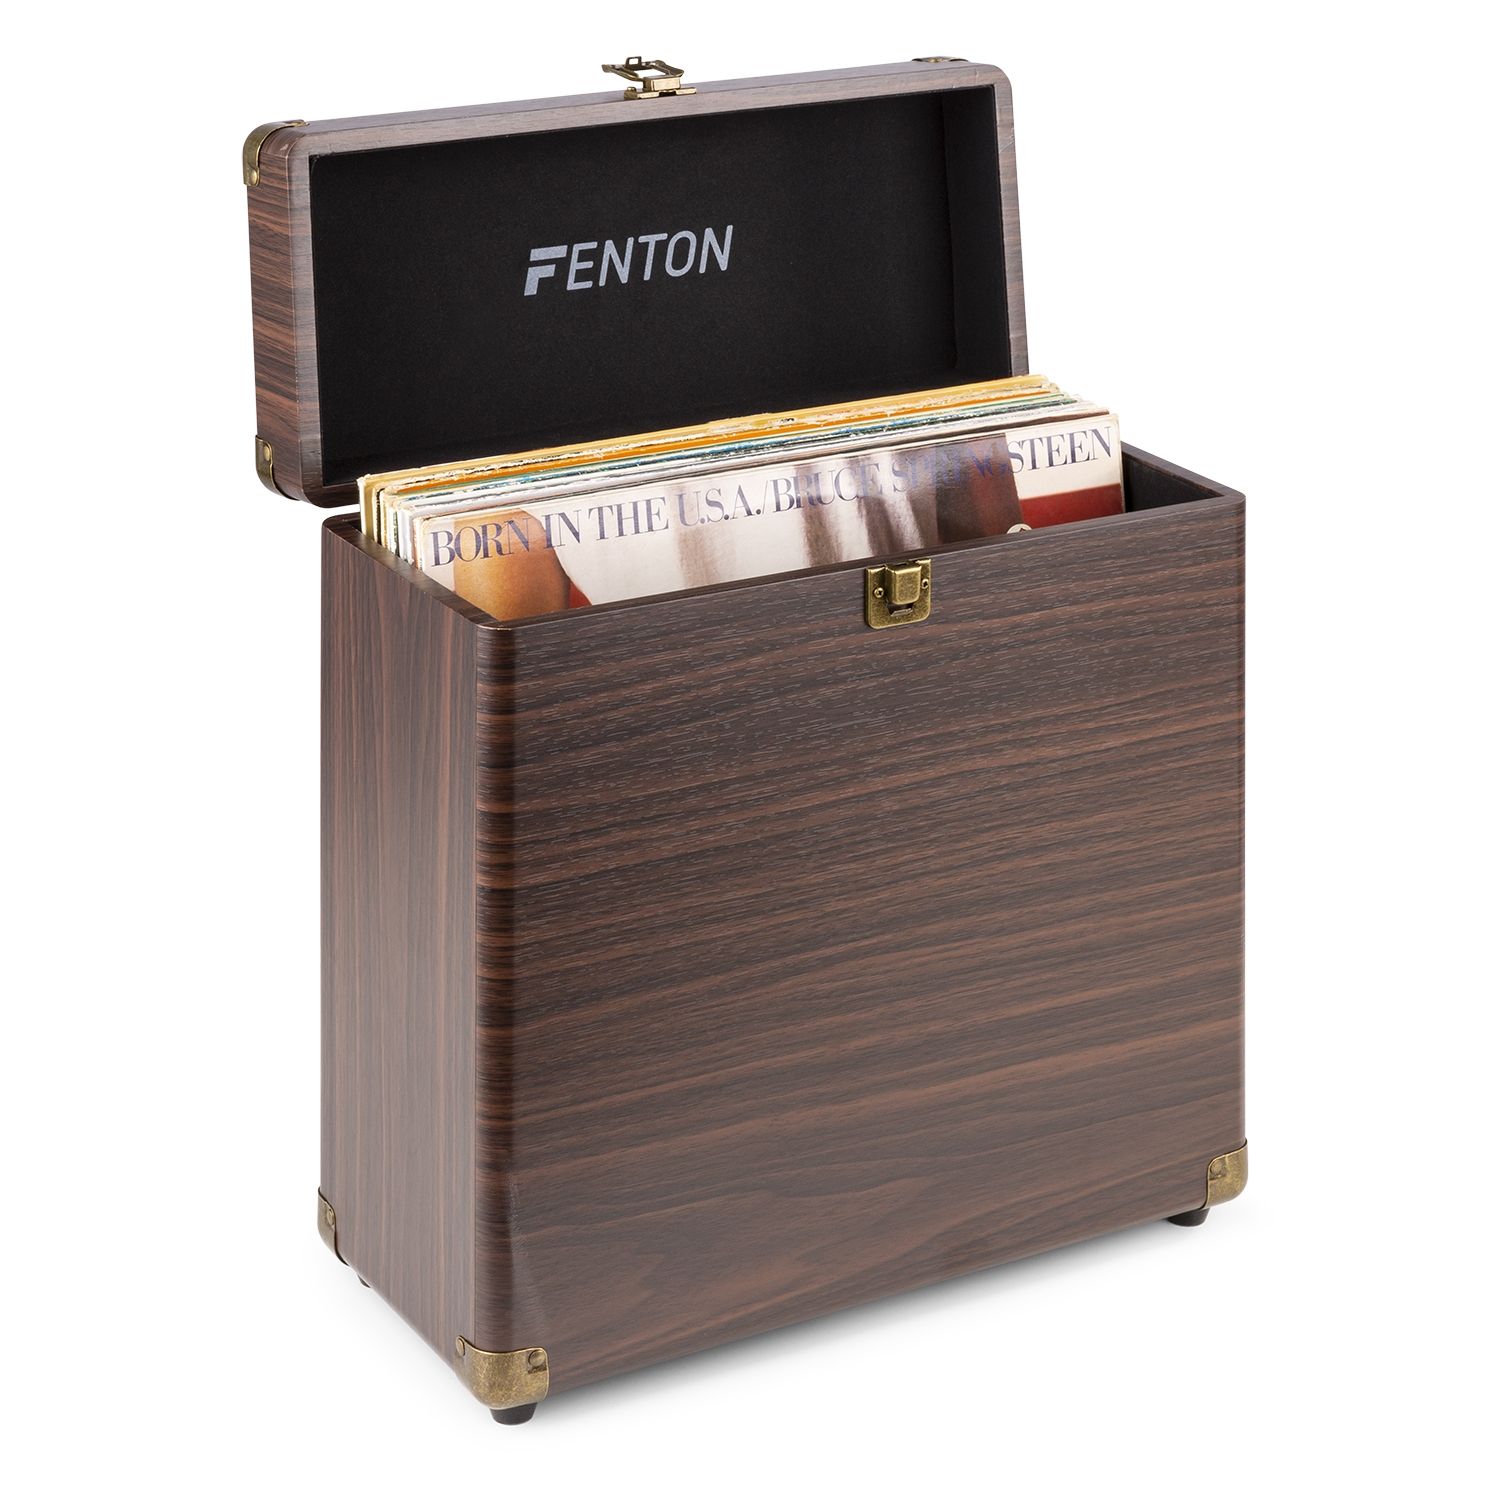 Fenton Retourdeal -  RC30 platenkoffer voor ruim 30 platen - Darkwood